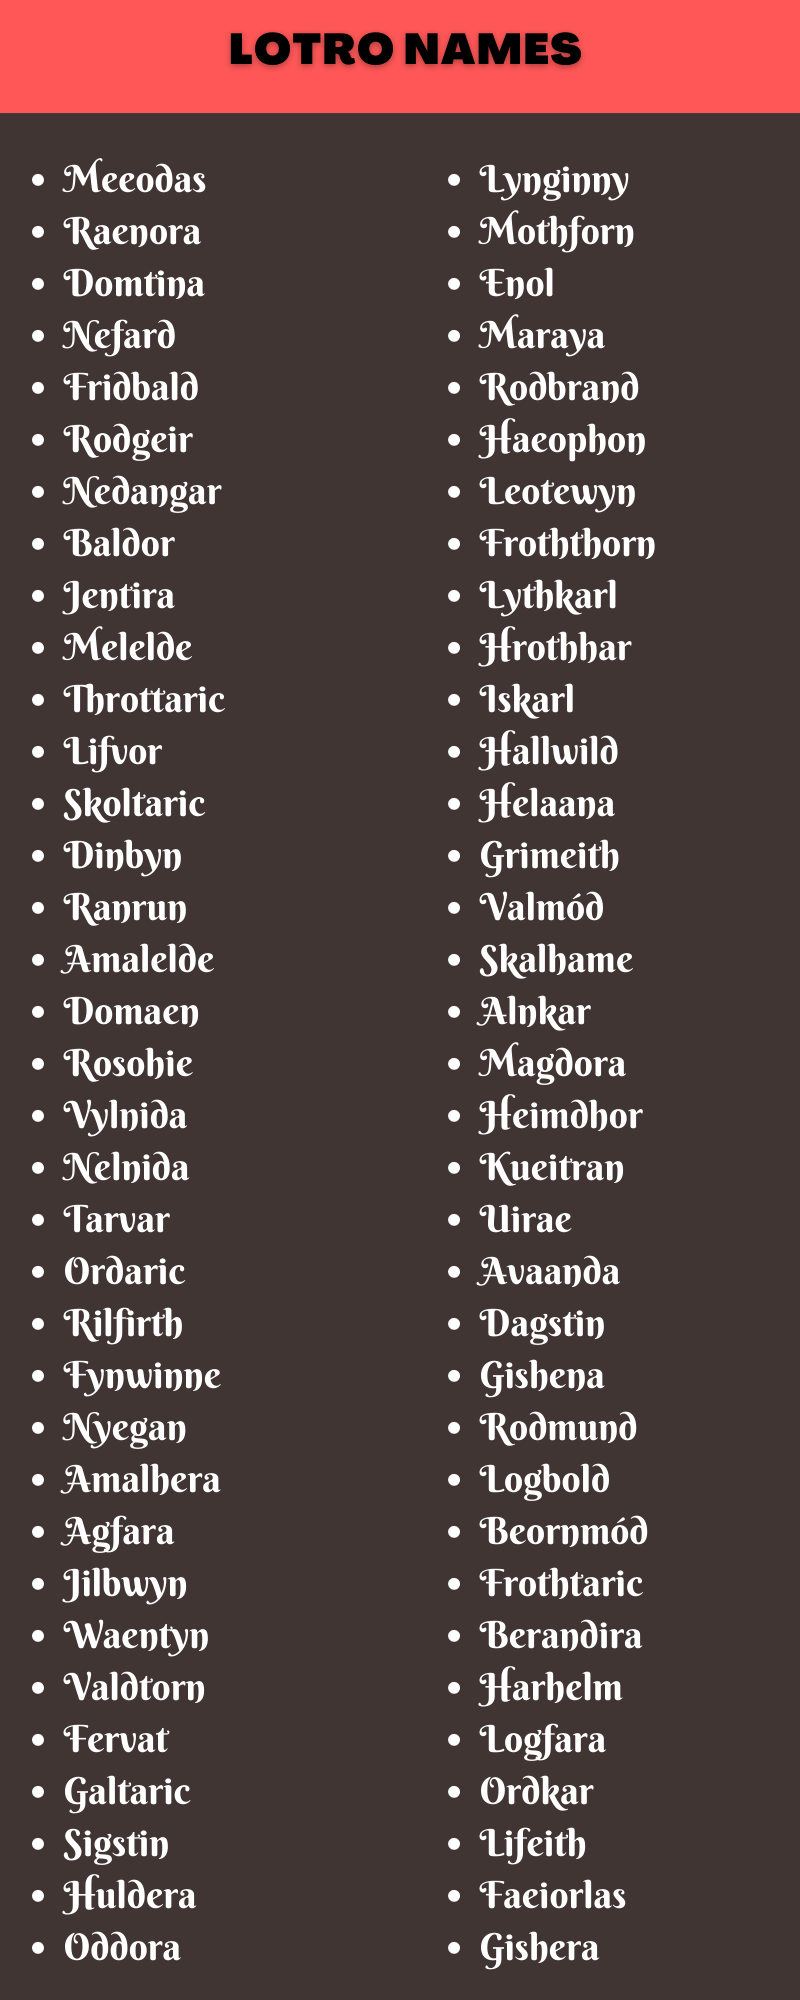 Lotro Names